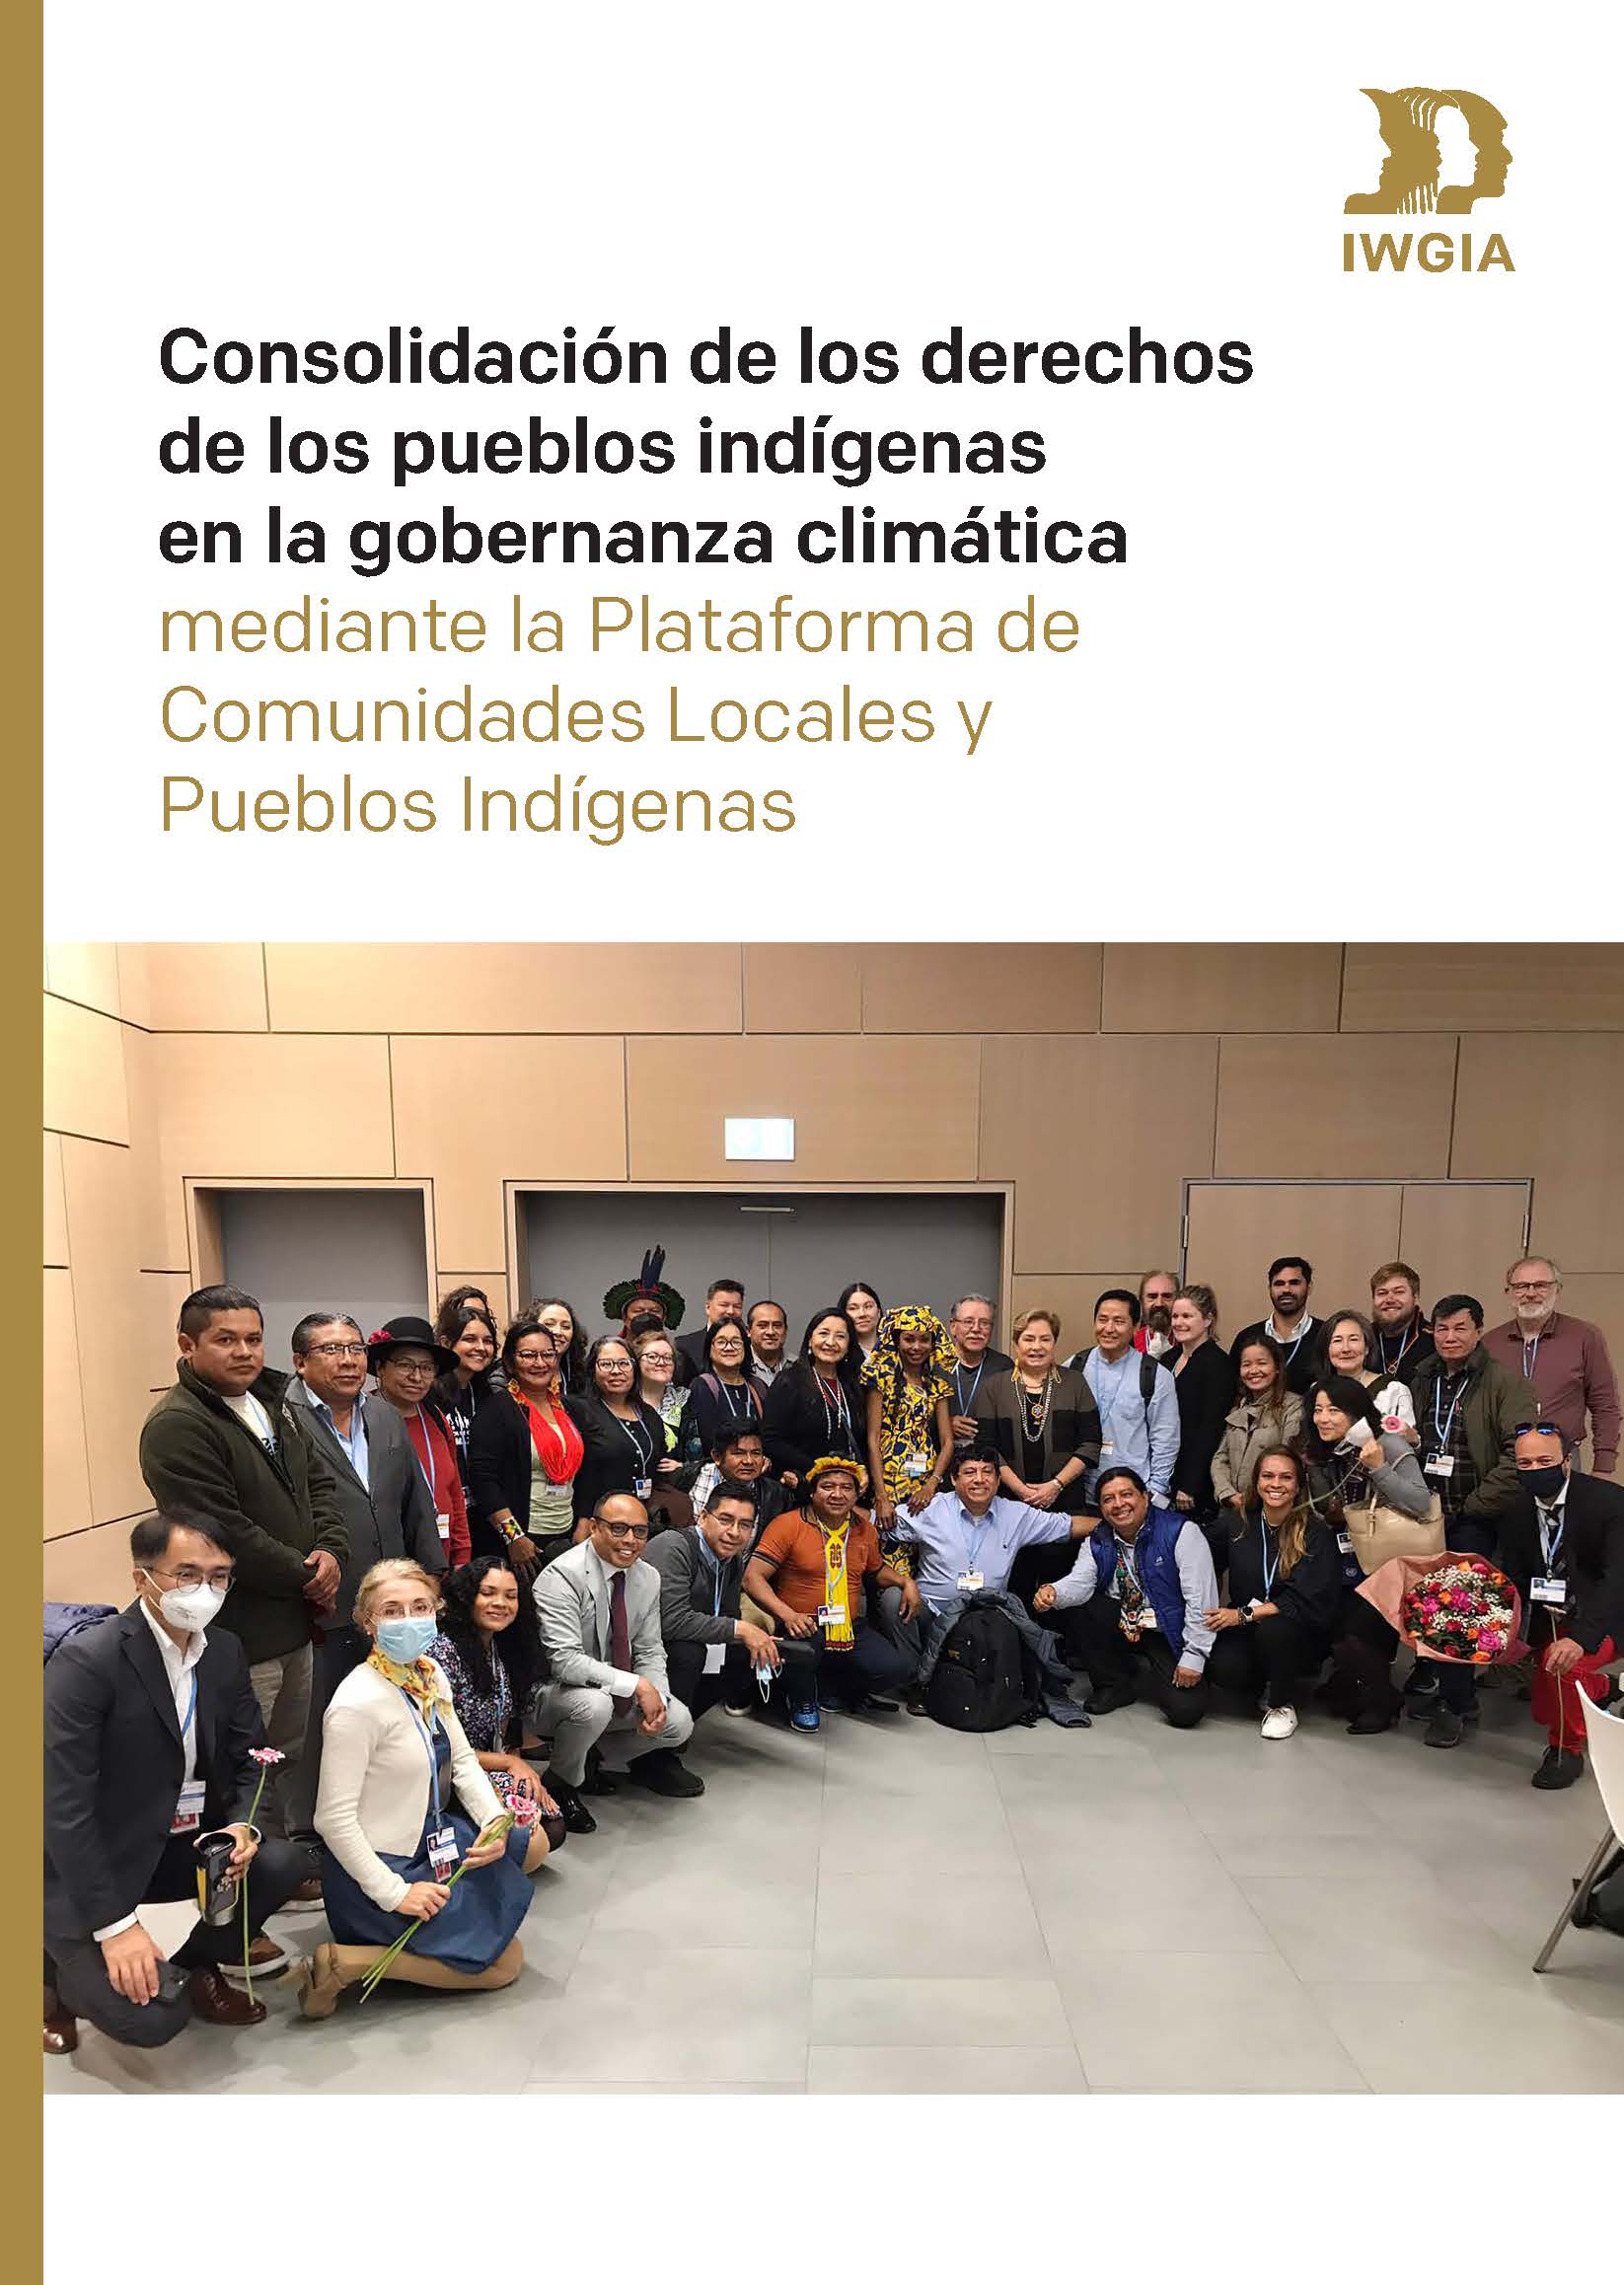 Consolidación de los derechos de los pueblos indígenas en la gobernanza climática mediante la Plataforma de Comunidades Locales y Pueblos Indígenas